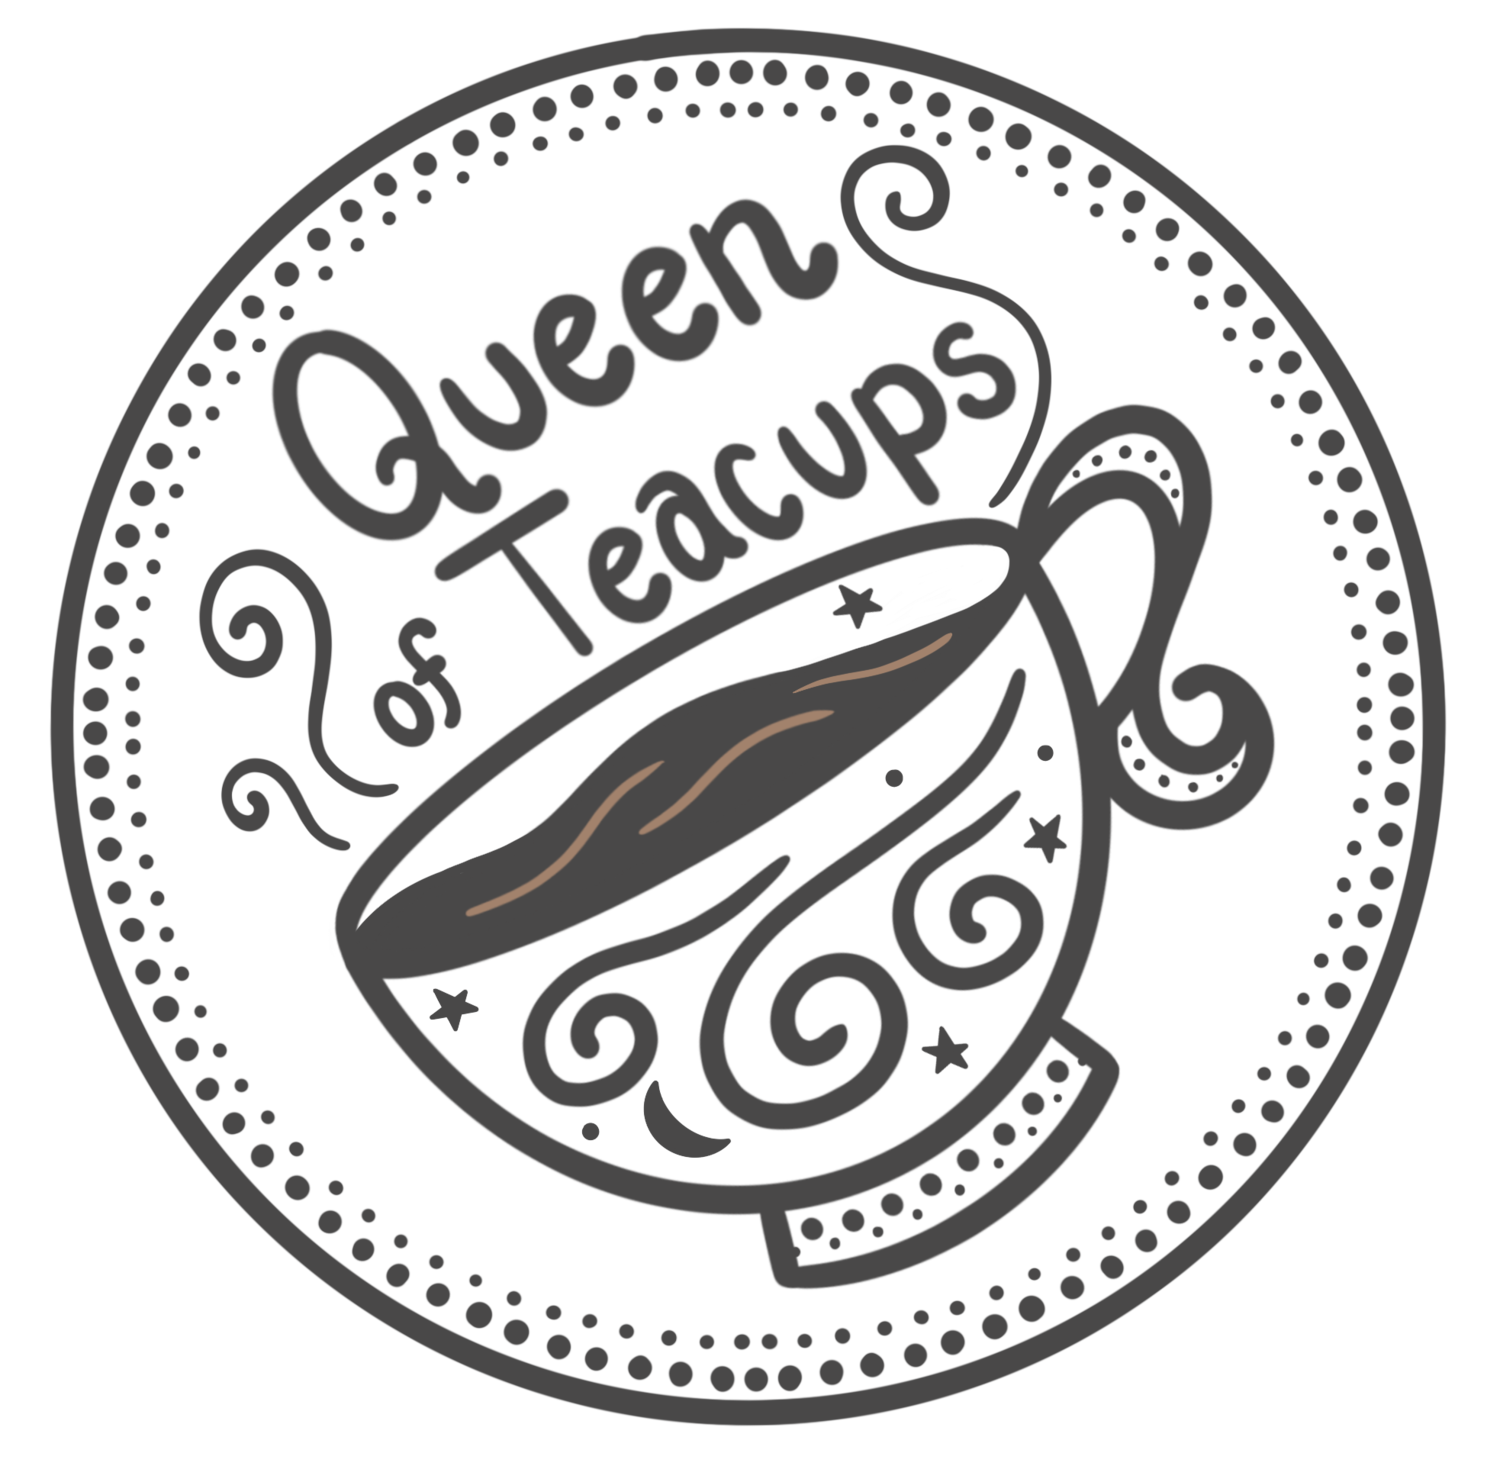 Queen of Teacups